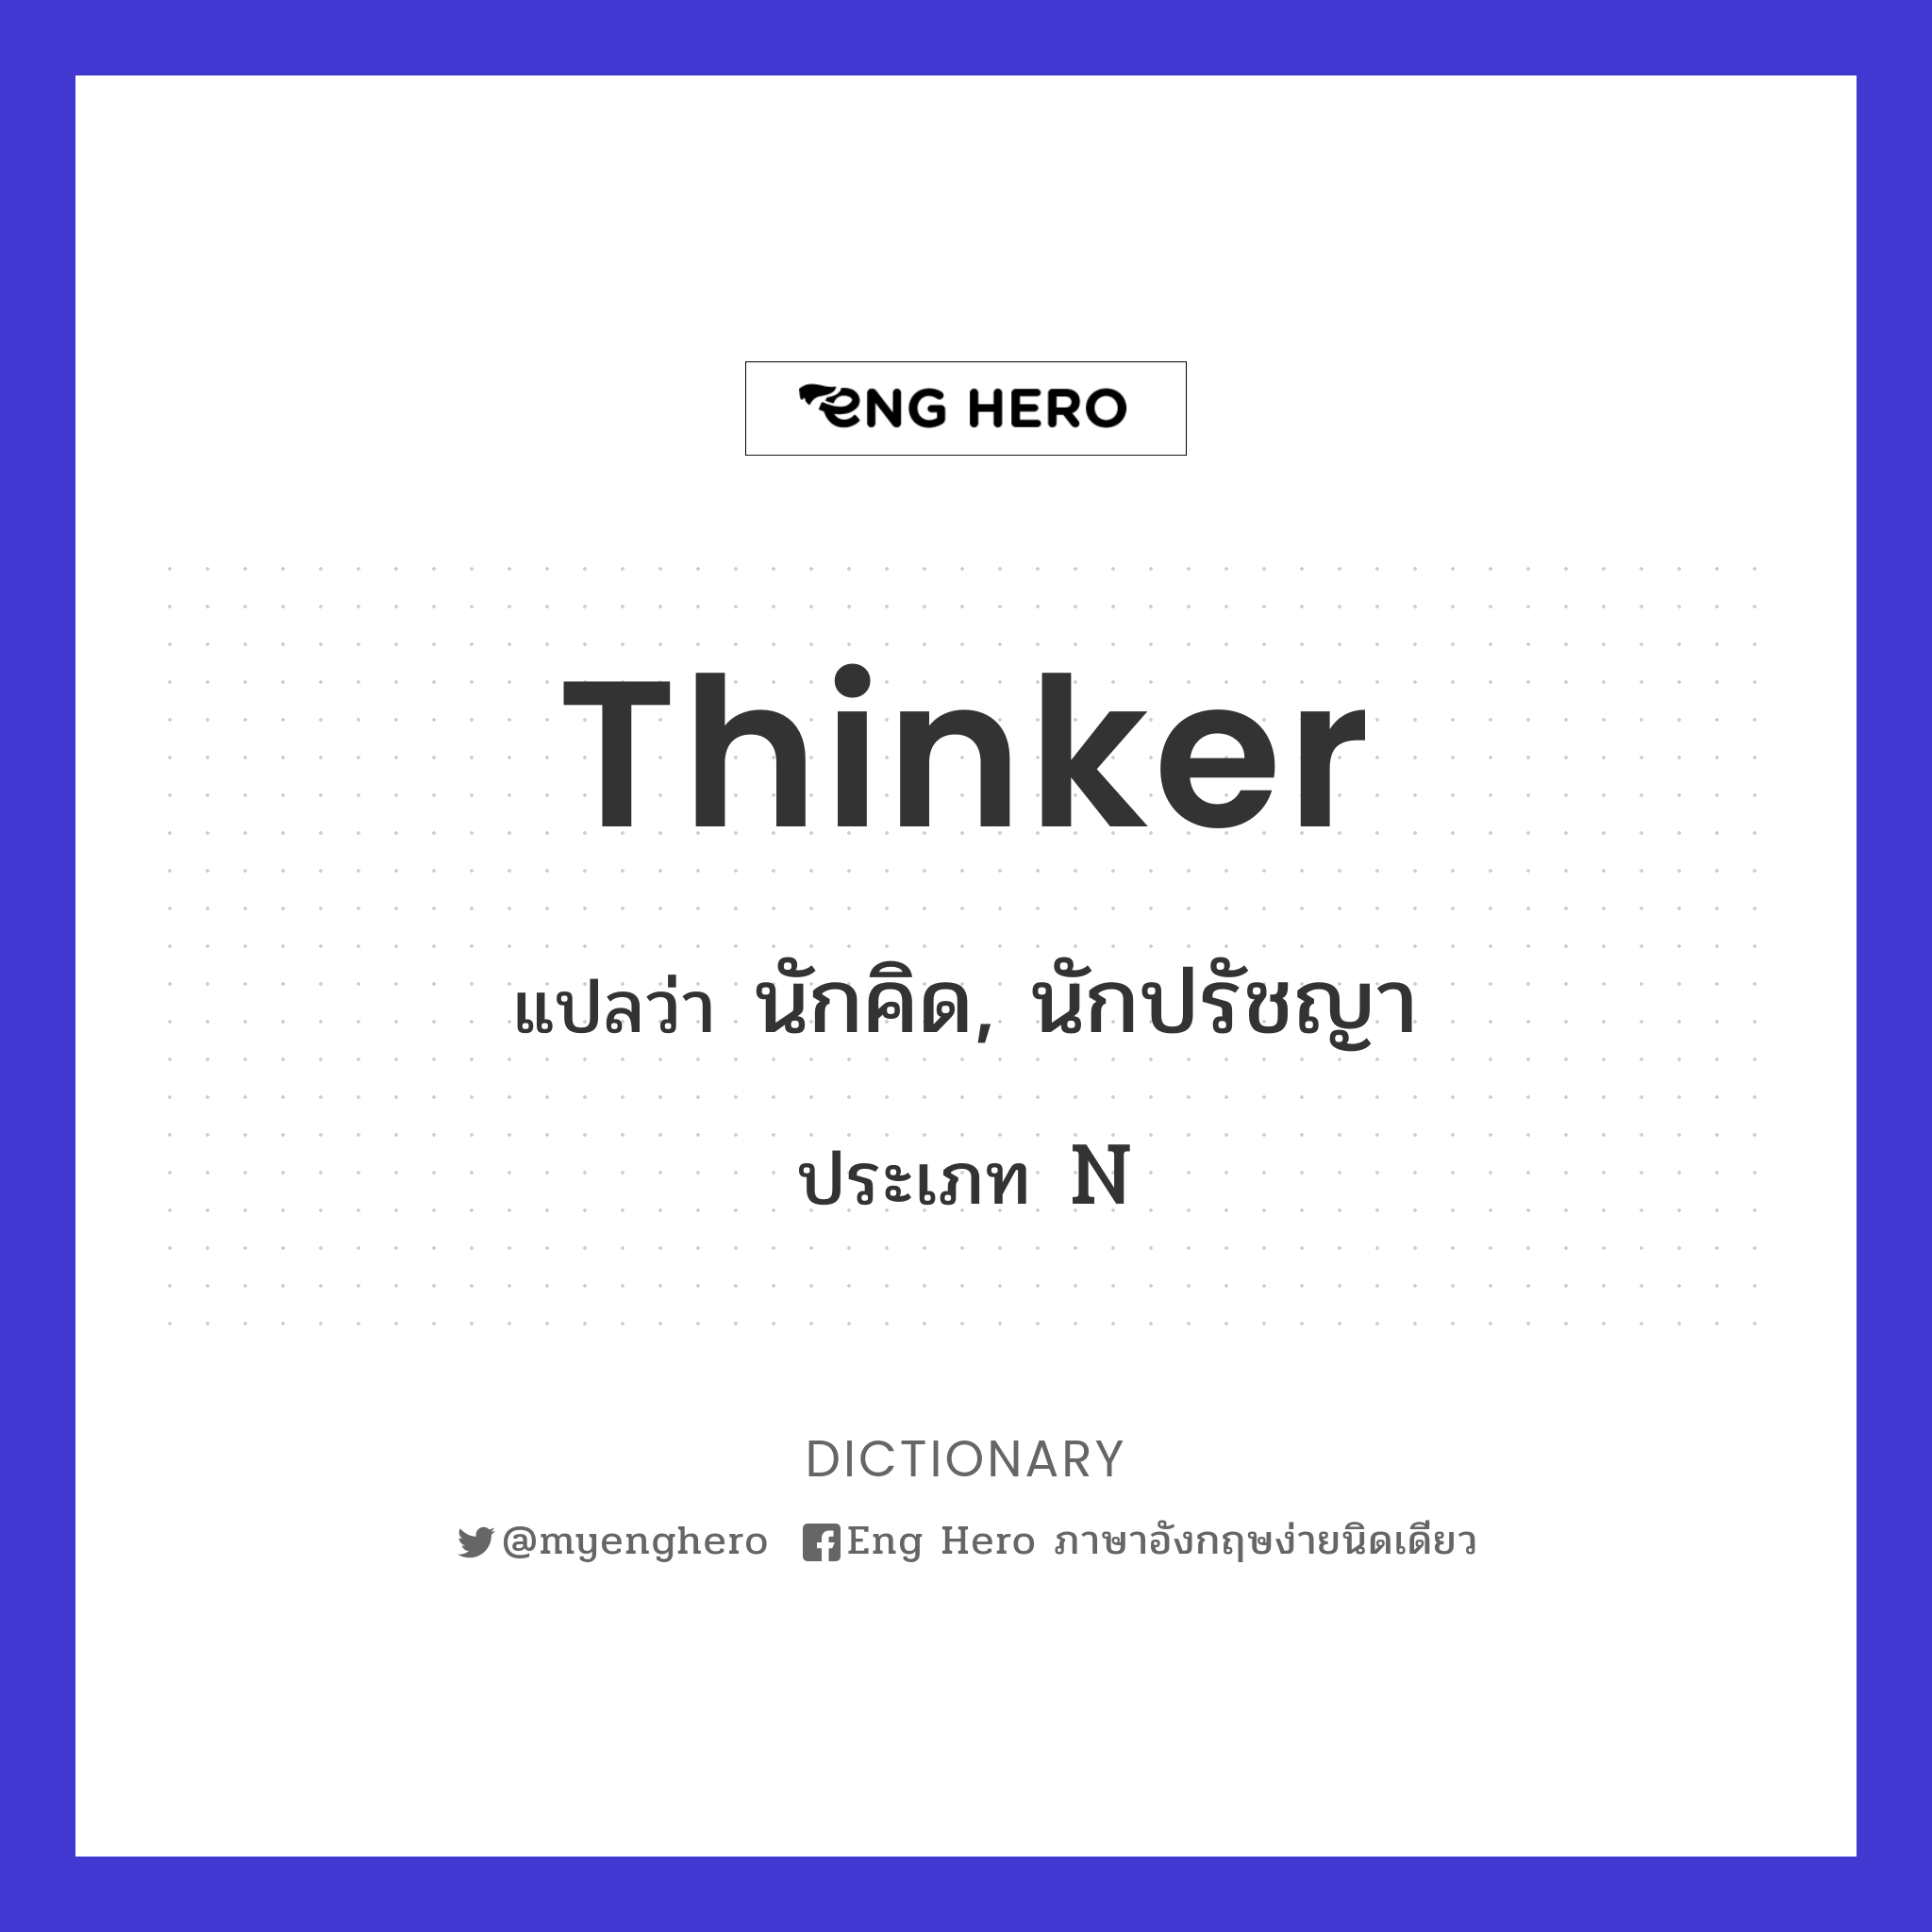 thinker